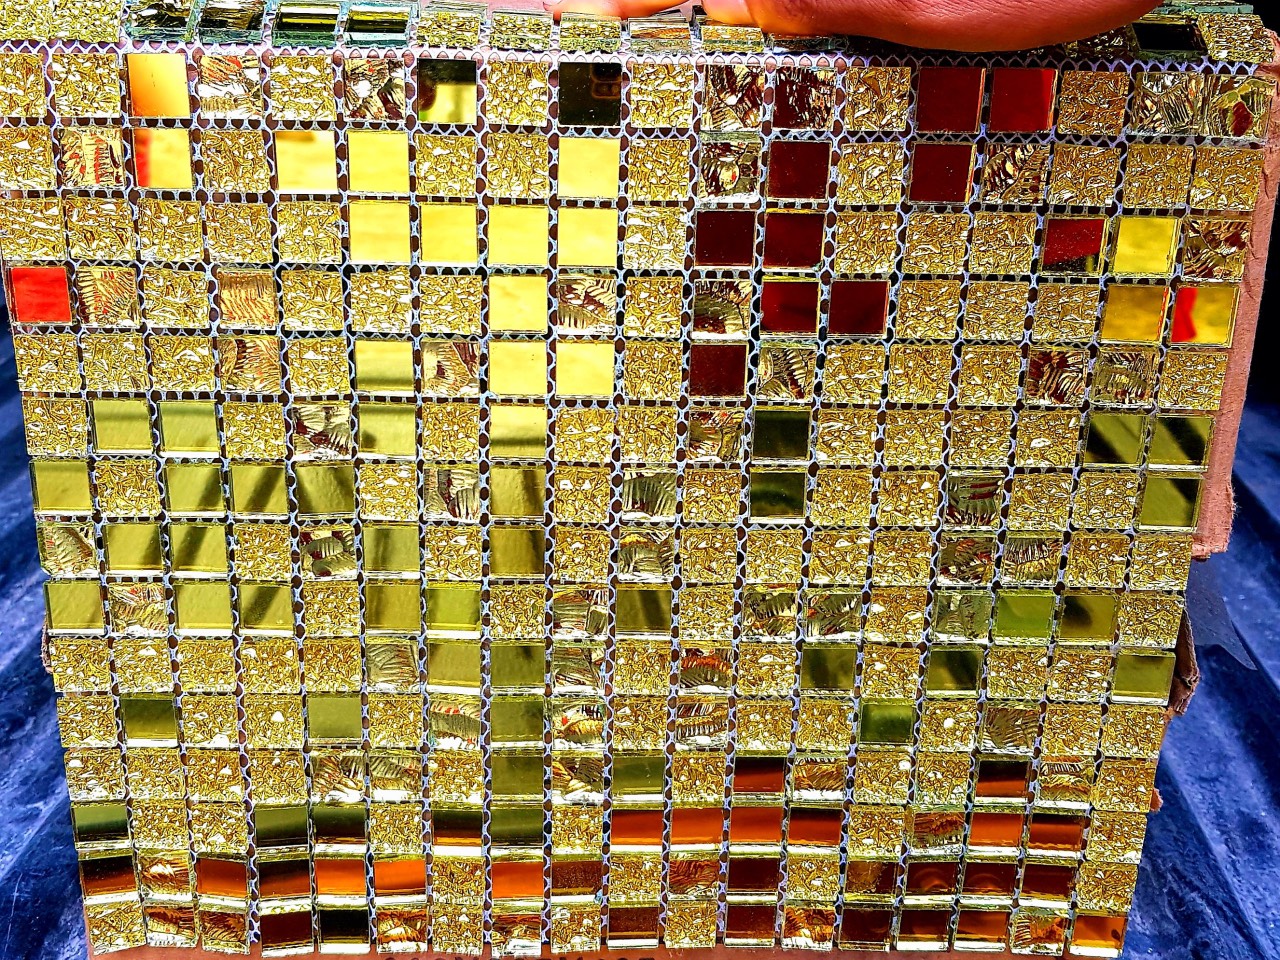 Kho gạch mosaic giá rẻ. Tấm ốp tường trang trí cafe, karaoke nhà cửa